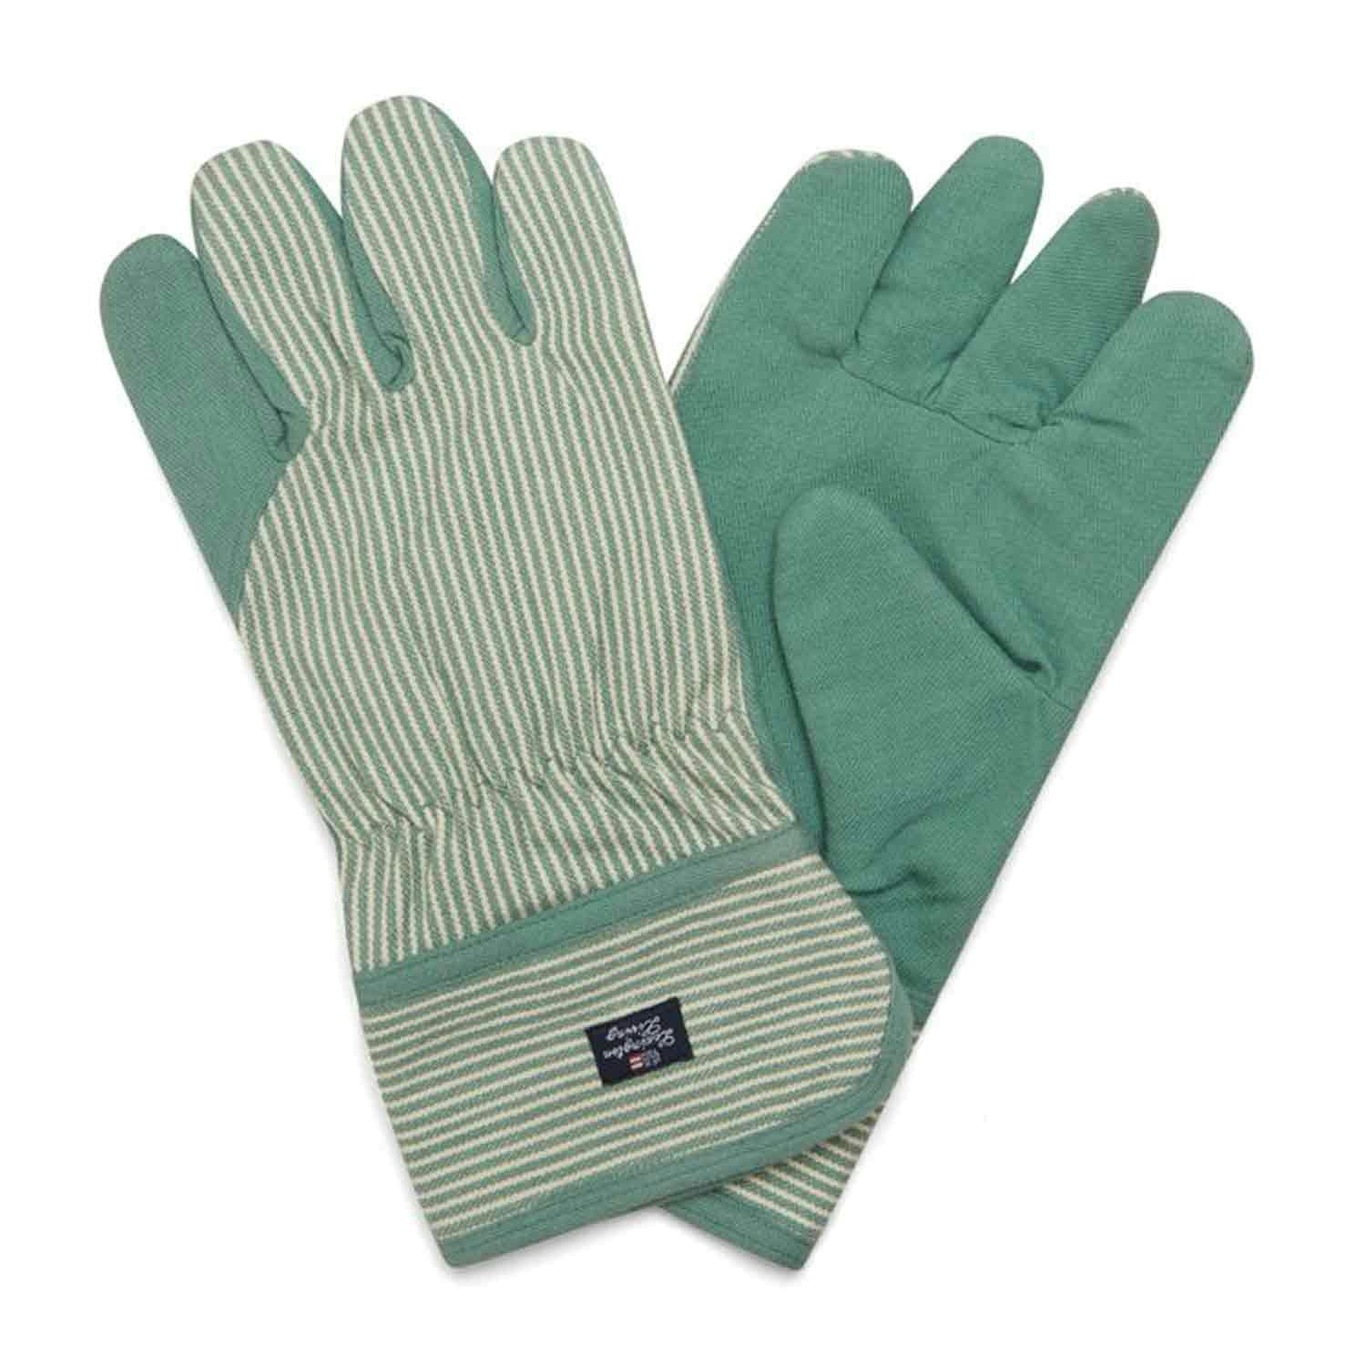 Organic Cotton Oxford Gardening Glove, L/XL